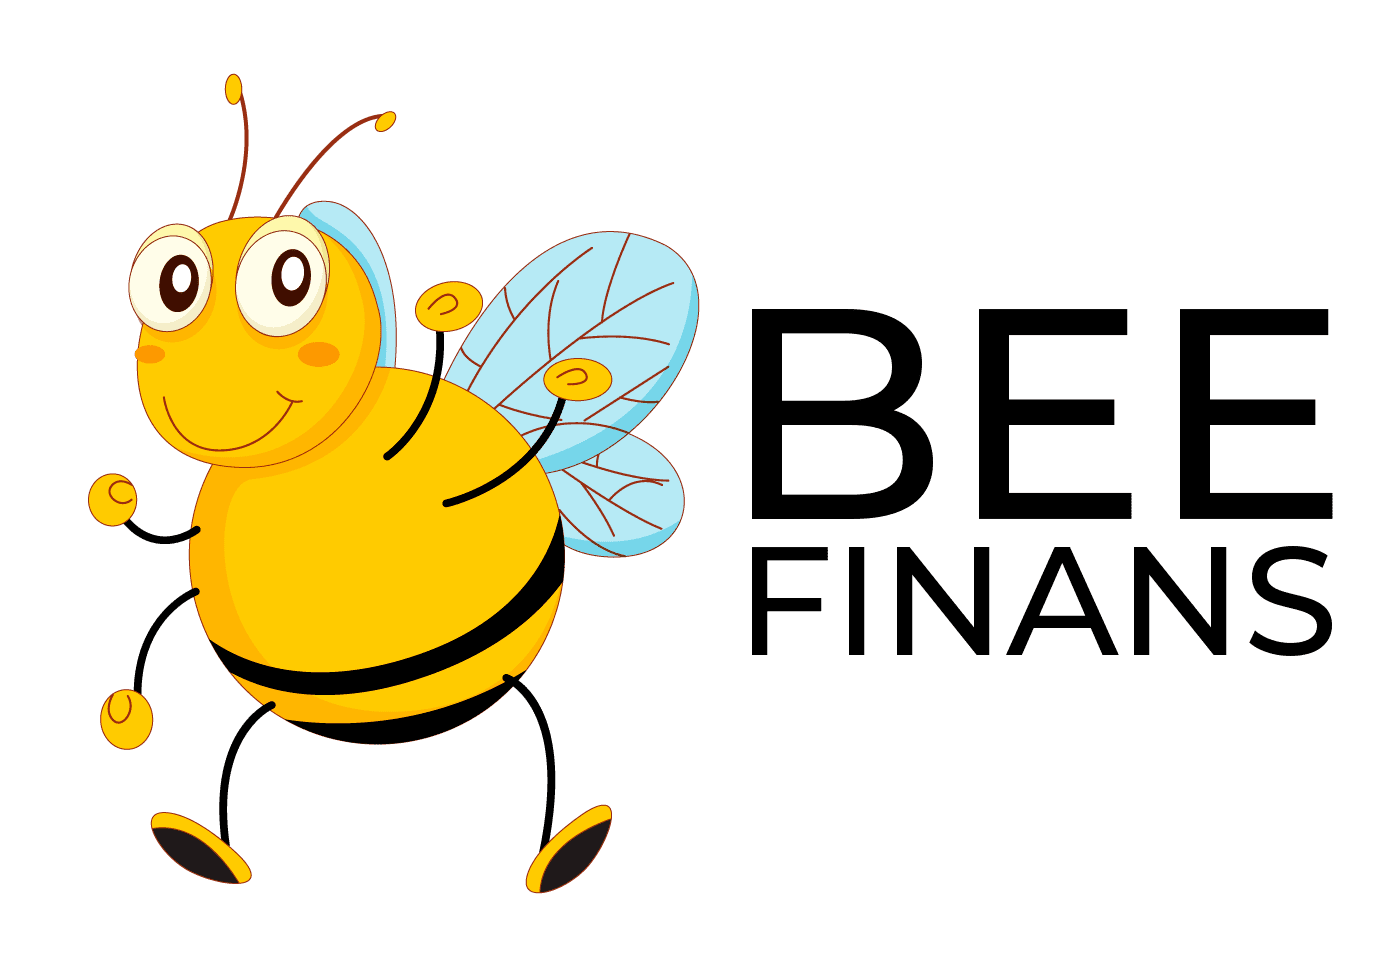 Beefinans